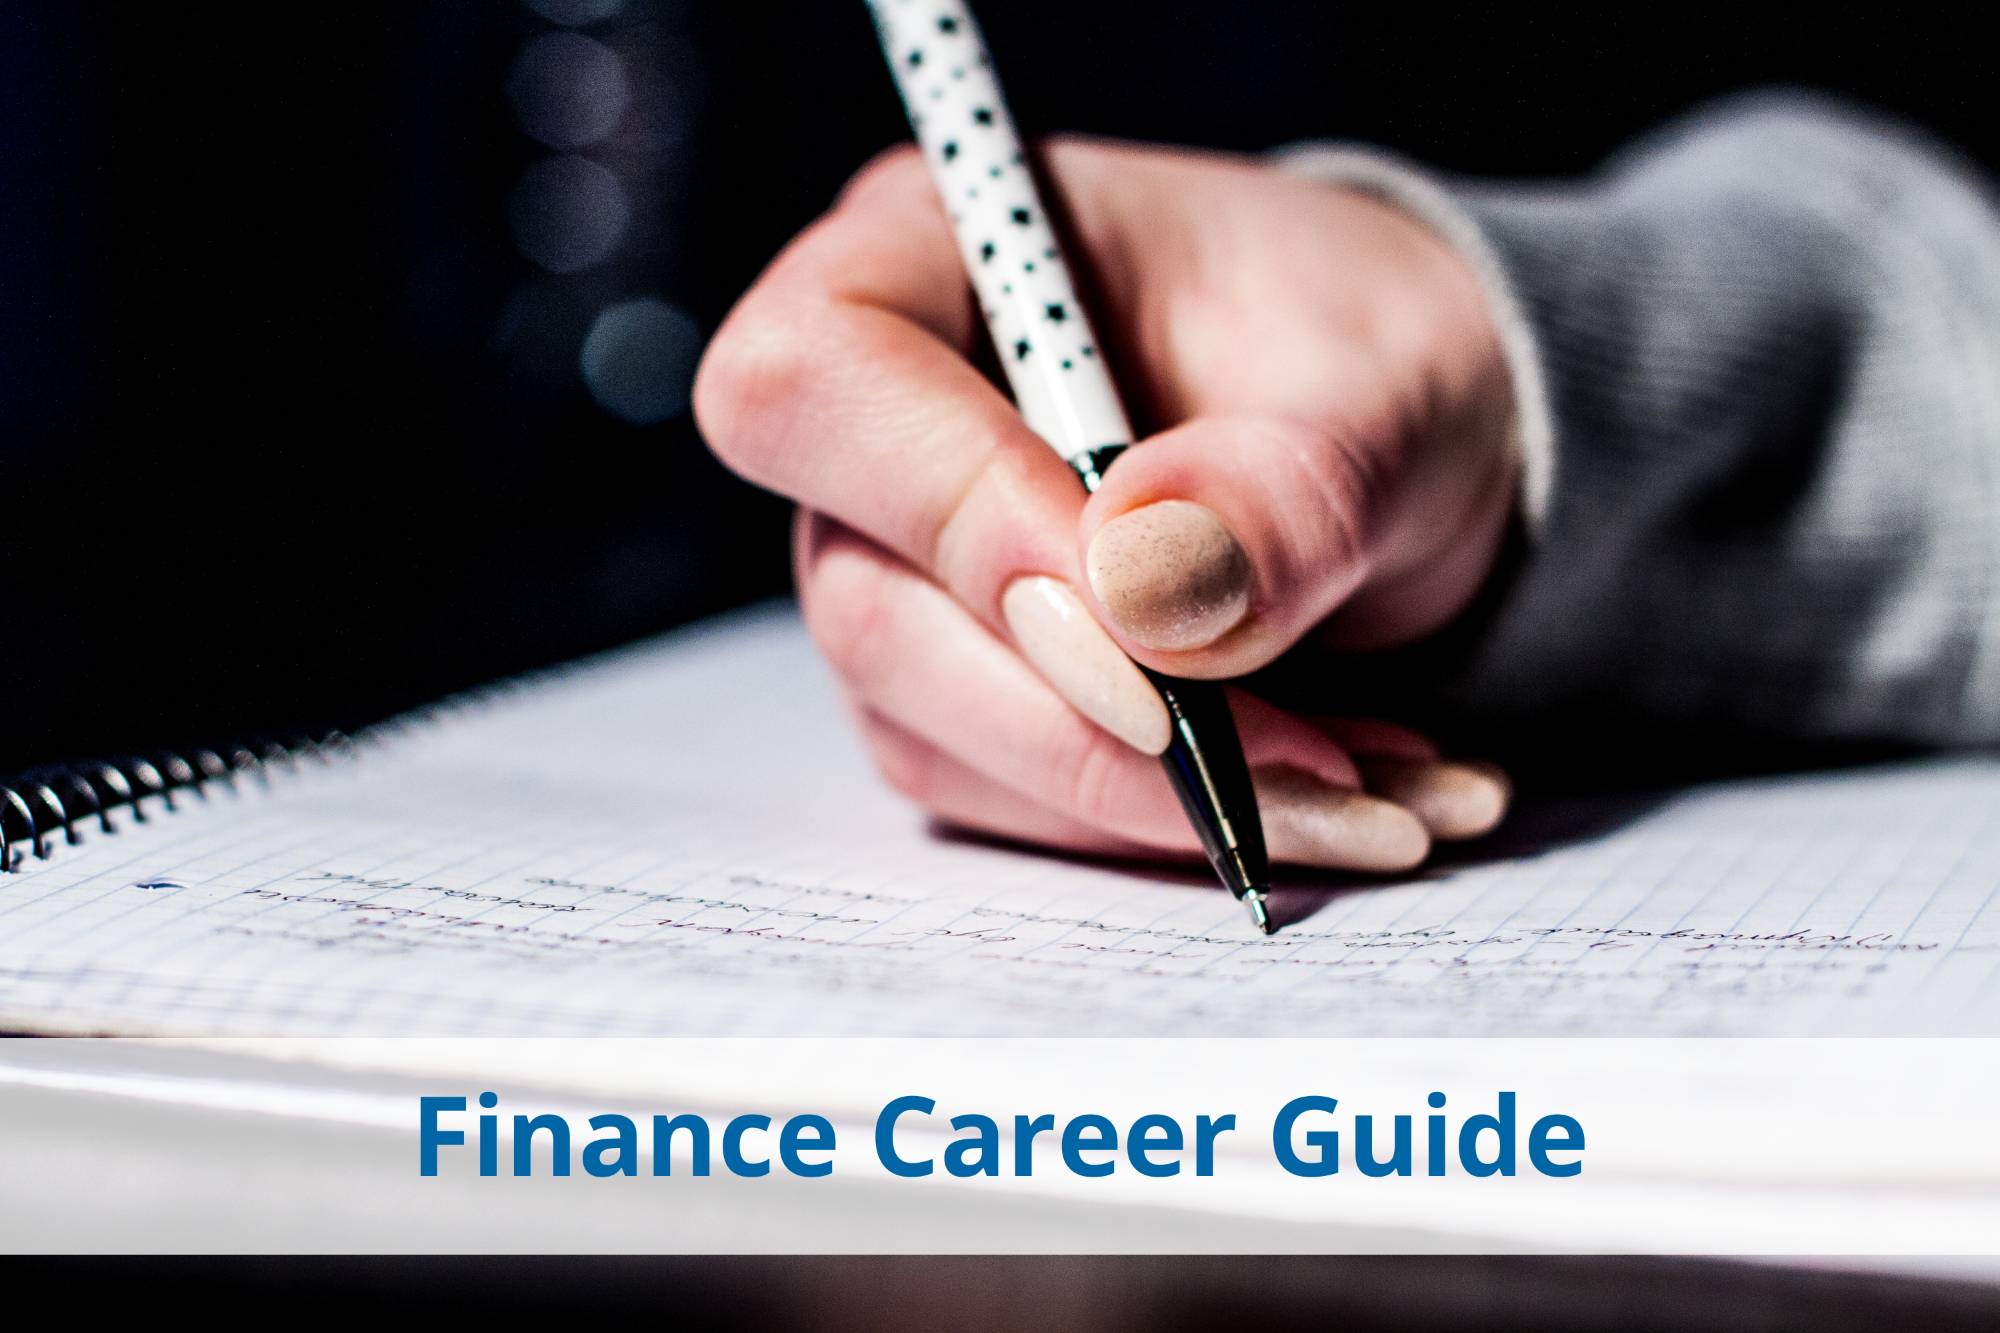 Finance career guide